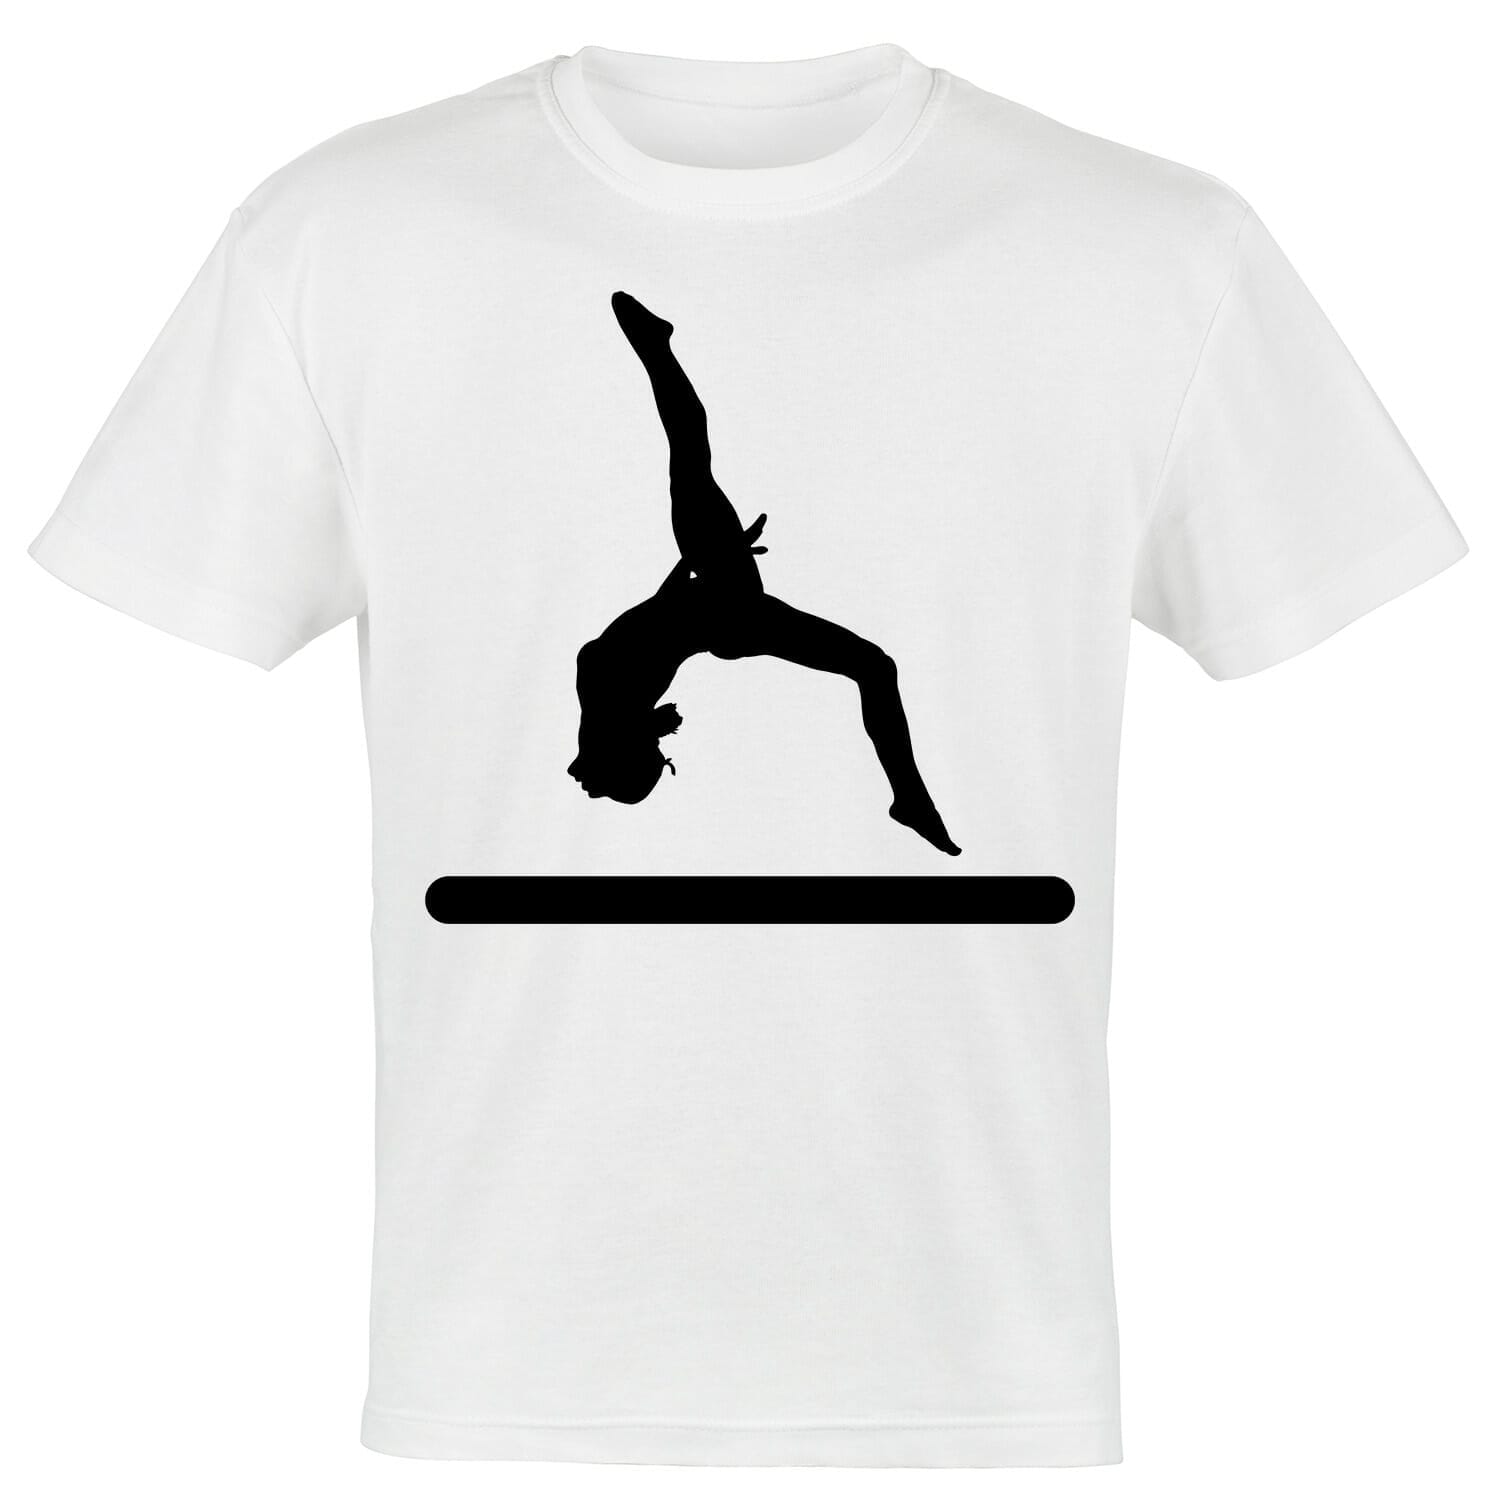 gymnast tshirt design for girls